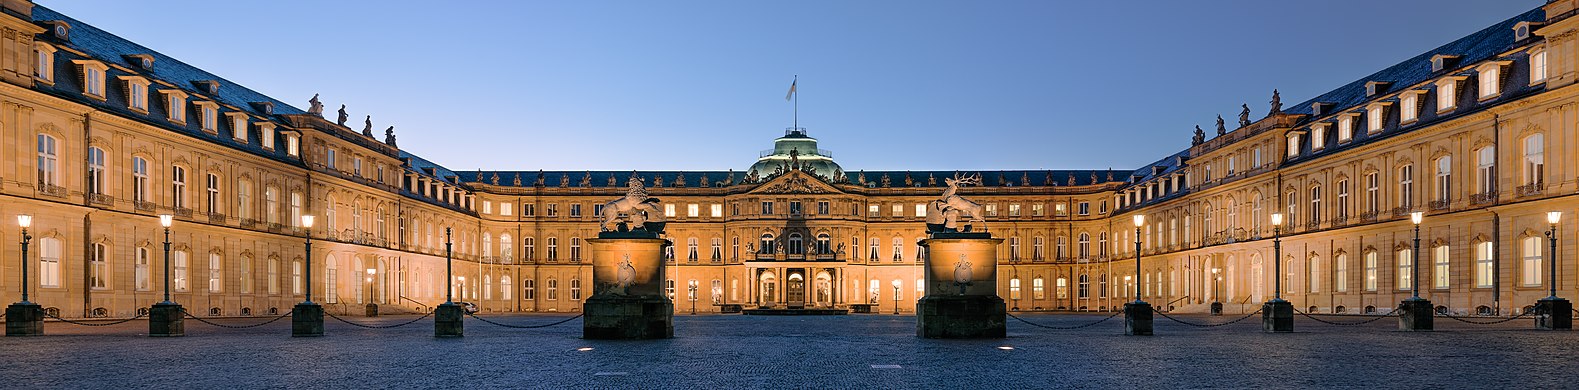     Neues Schloss (new palace) (Schlossplatz, Stuttgart, Germany).